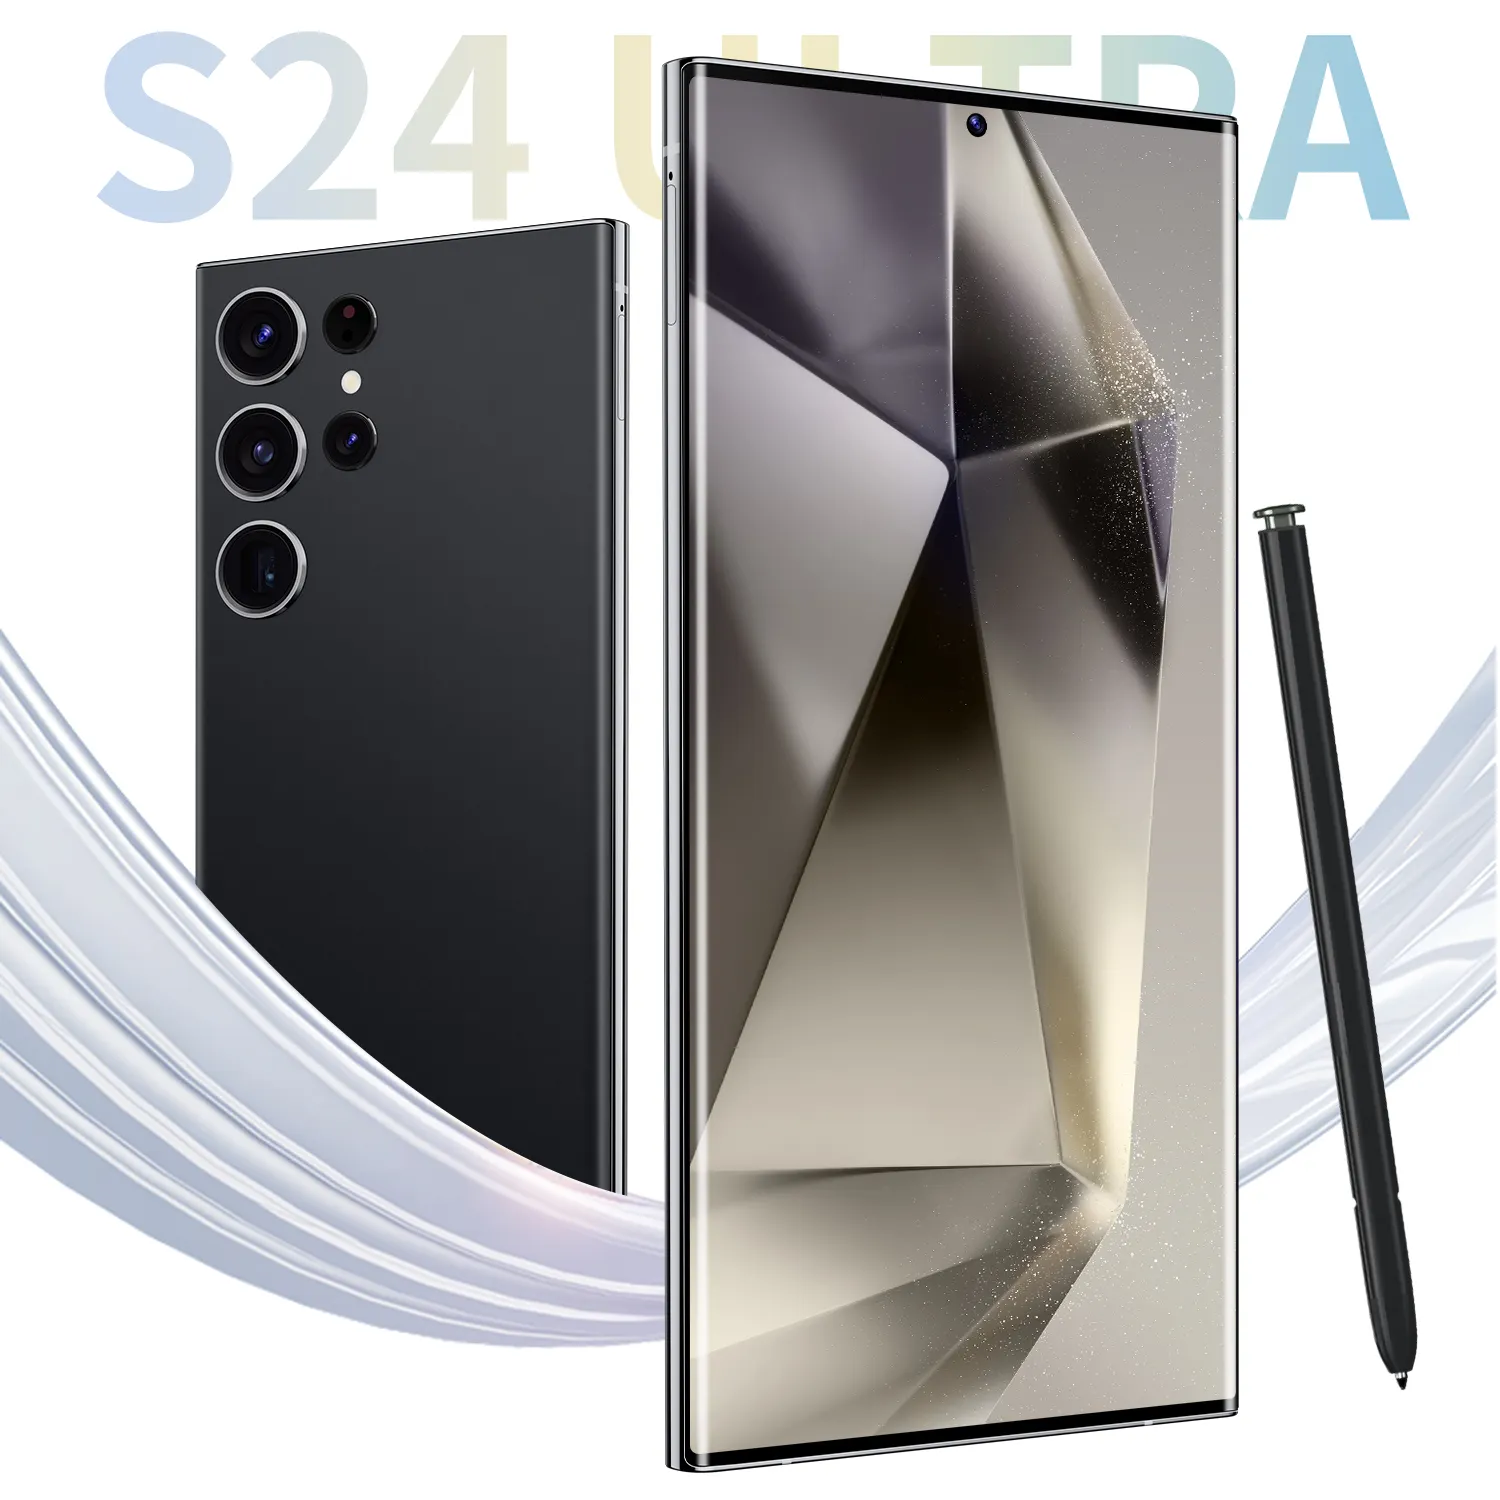 Orijinal marka 6.8 inç tam ekran 4G kilidi açılmamış akıllı telefon yeni S24 Ultra telefon 3G LCD ekran İngiltere küresel sürüm cep telefonu